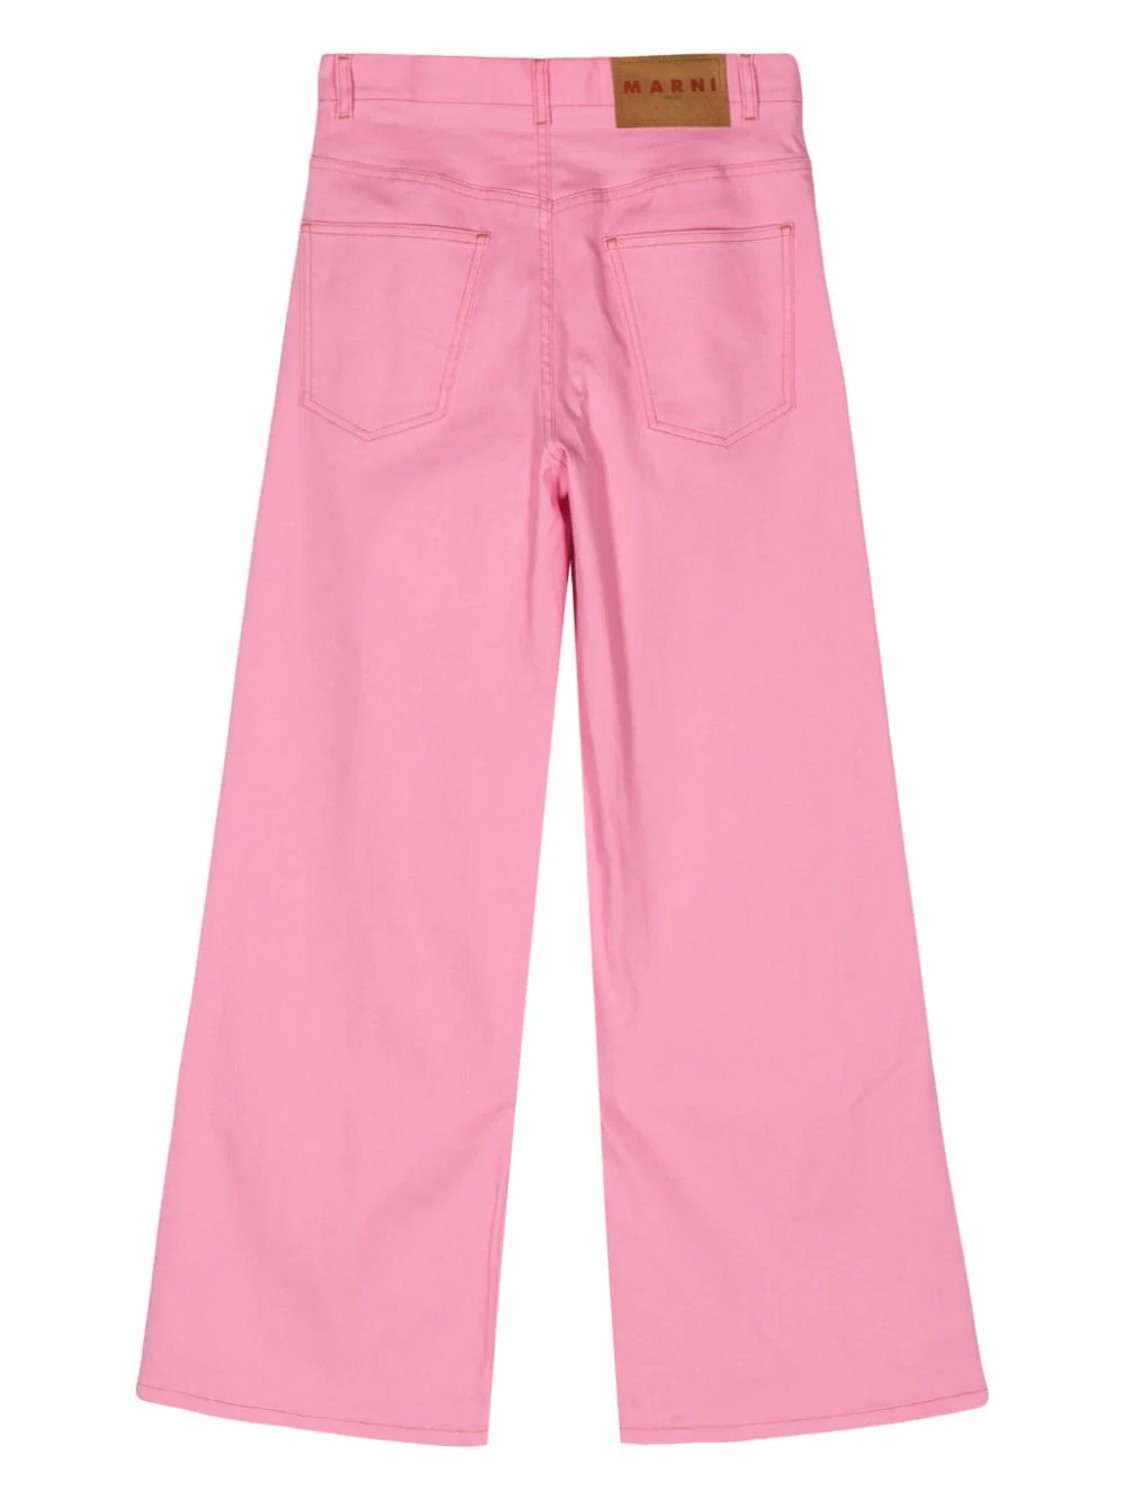 shop Marni  Pantaloni: Pantaloni Marni, in denim rosa, gamba ampia e dritta, tasche davanti e dietro, vita alta.

Composizione: 100% cotone. number 2737